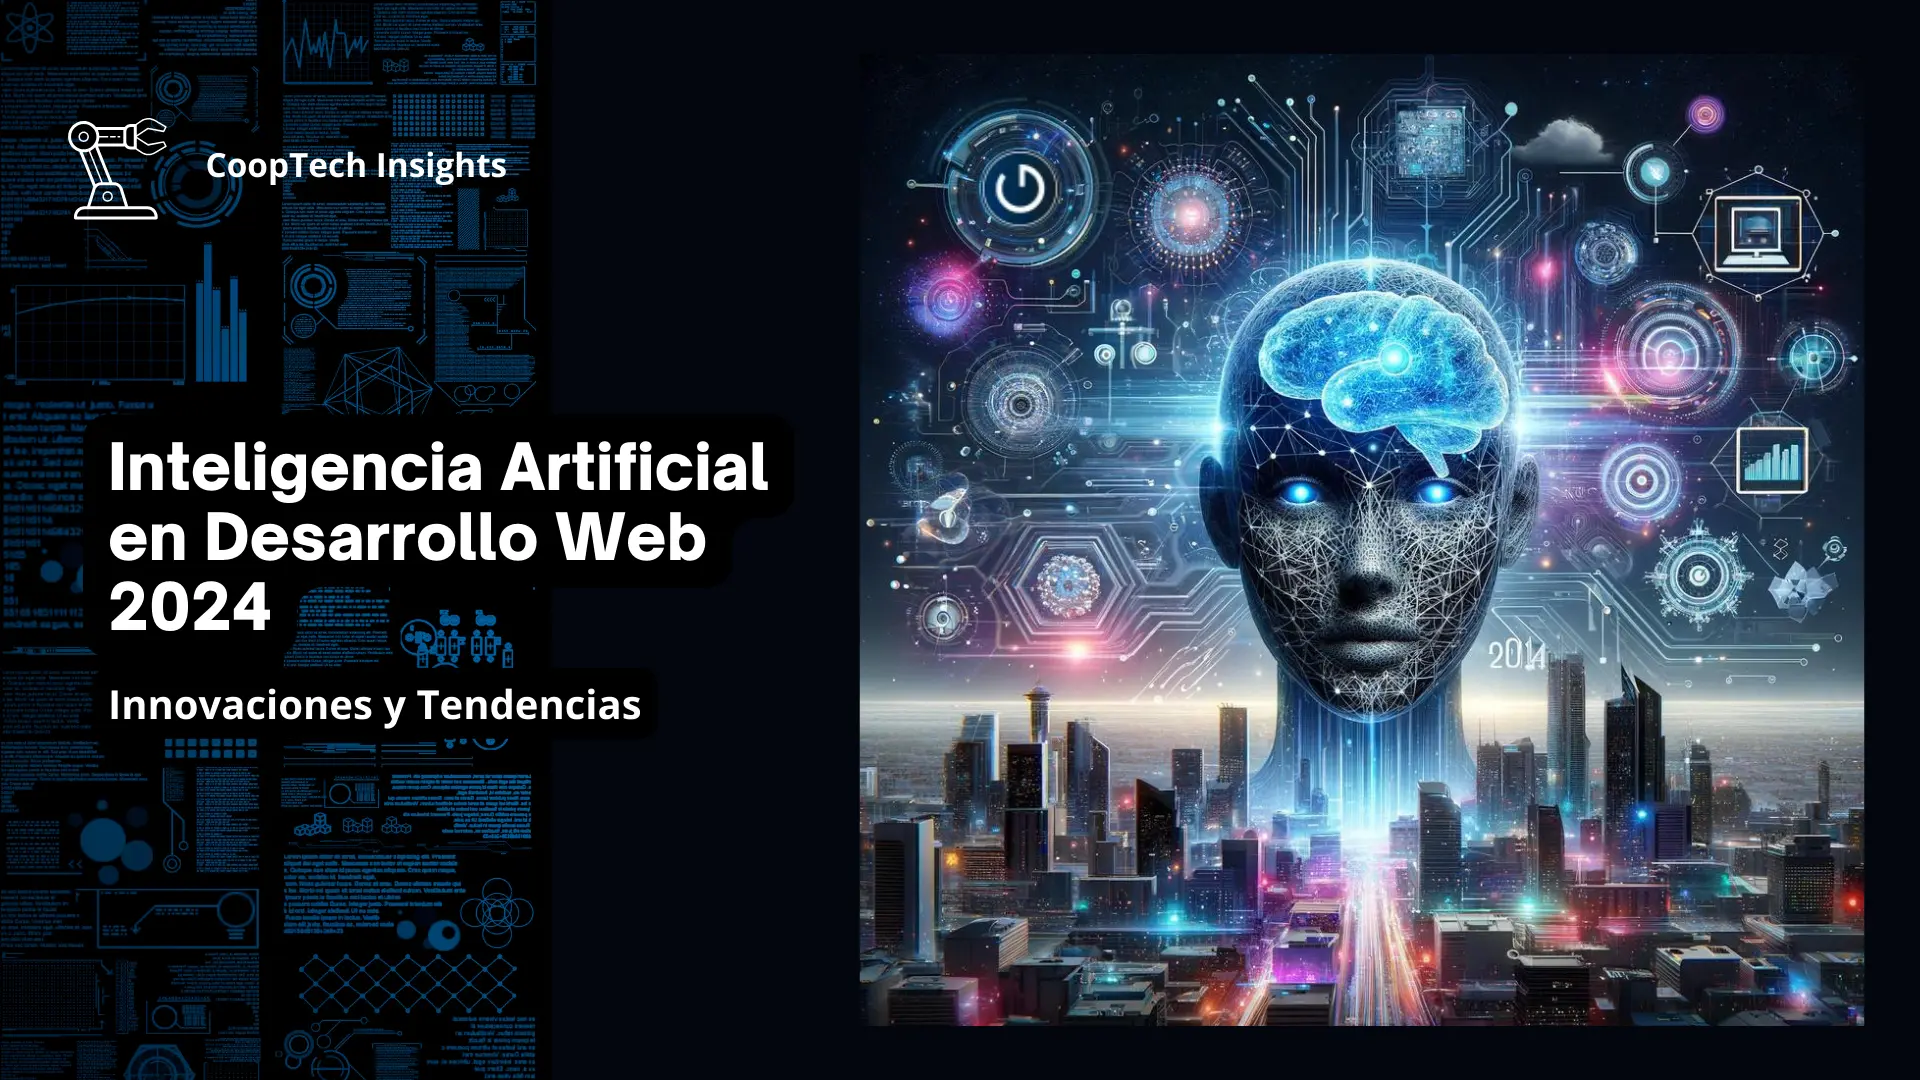 Composición visual representando la fusión de la inteligencia artificial y las tecnologías web modernas para 2024, con elementos de redes digitales, circuitos de IA y diseño web futurista.